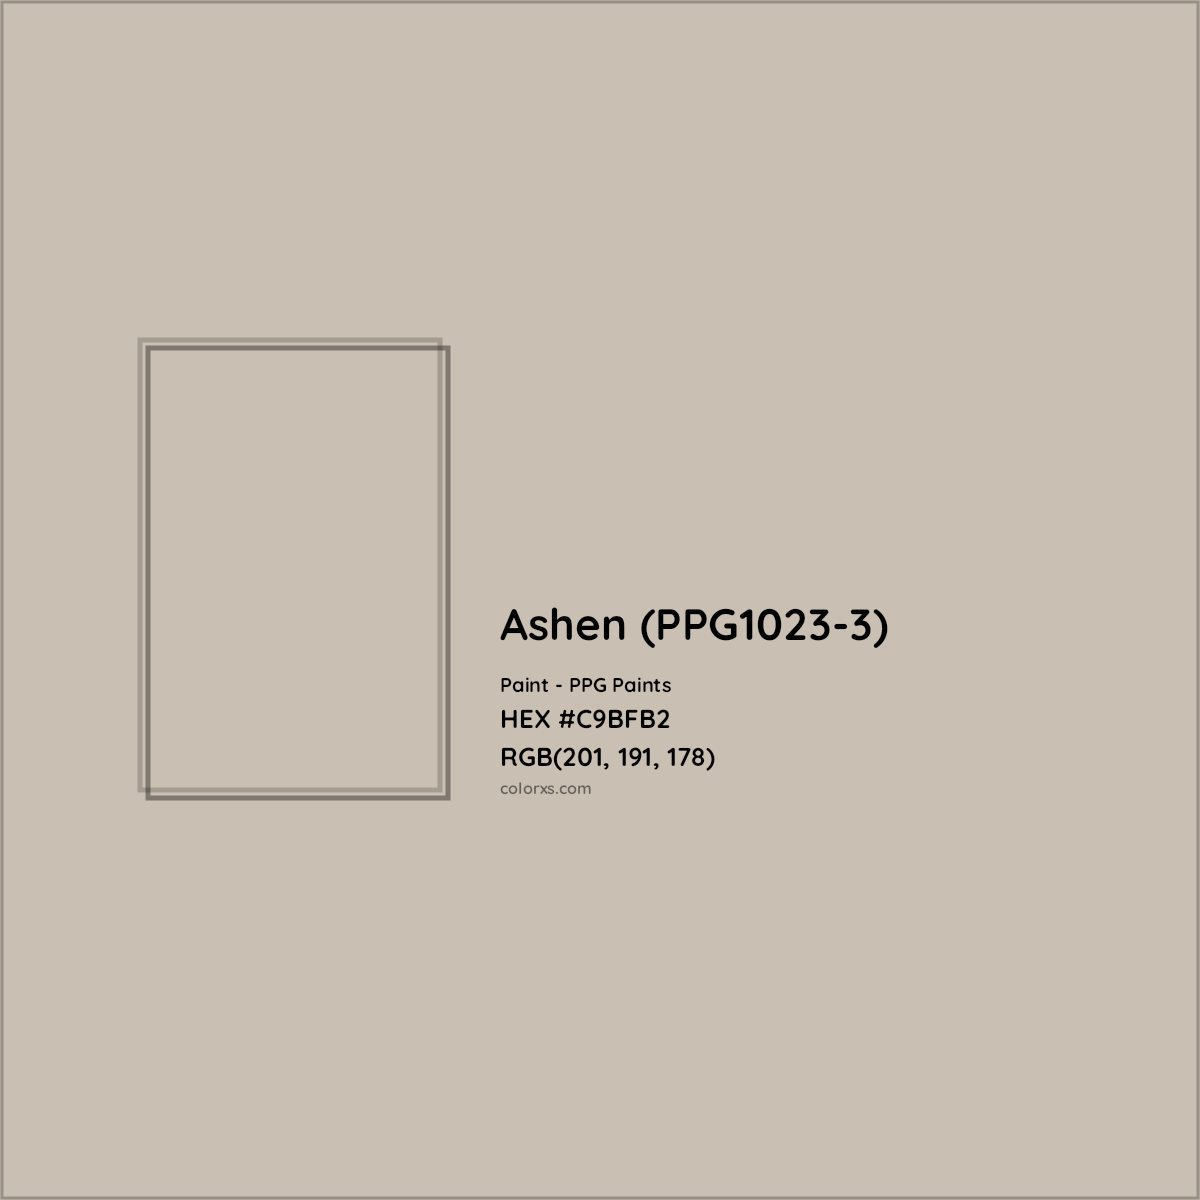 HEX #C9BFB2 Ashen (PPG1023-3) Paint PPG Paints - Color Code